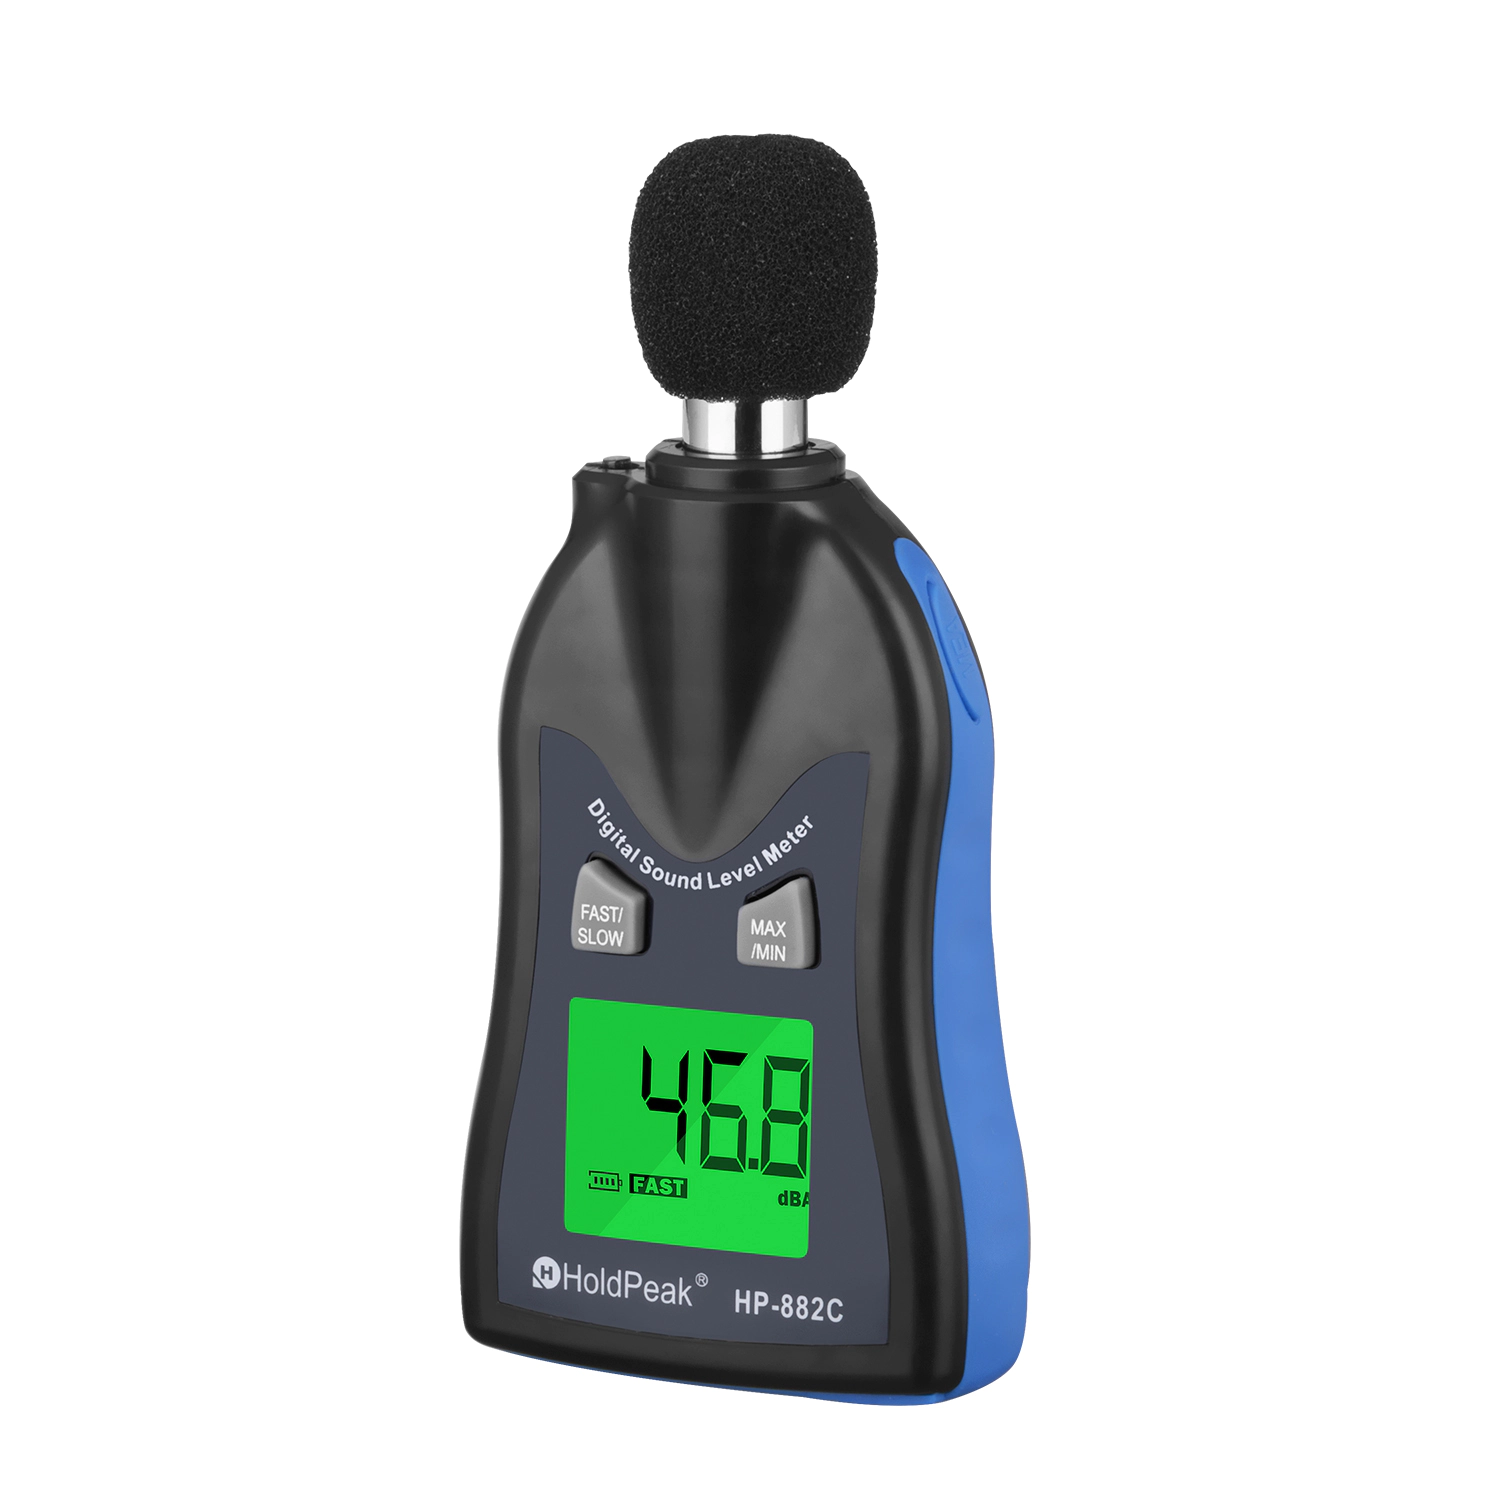 Digital Sound Level Meter, Architectural Acoustics Measurement  HP-882C